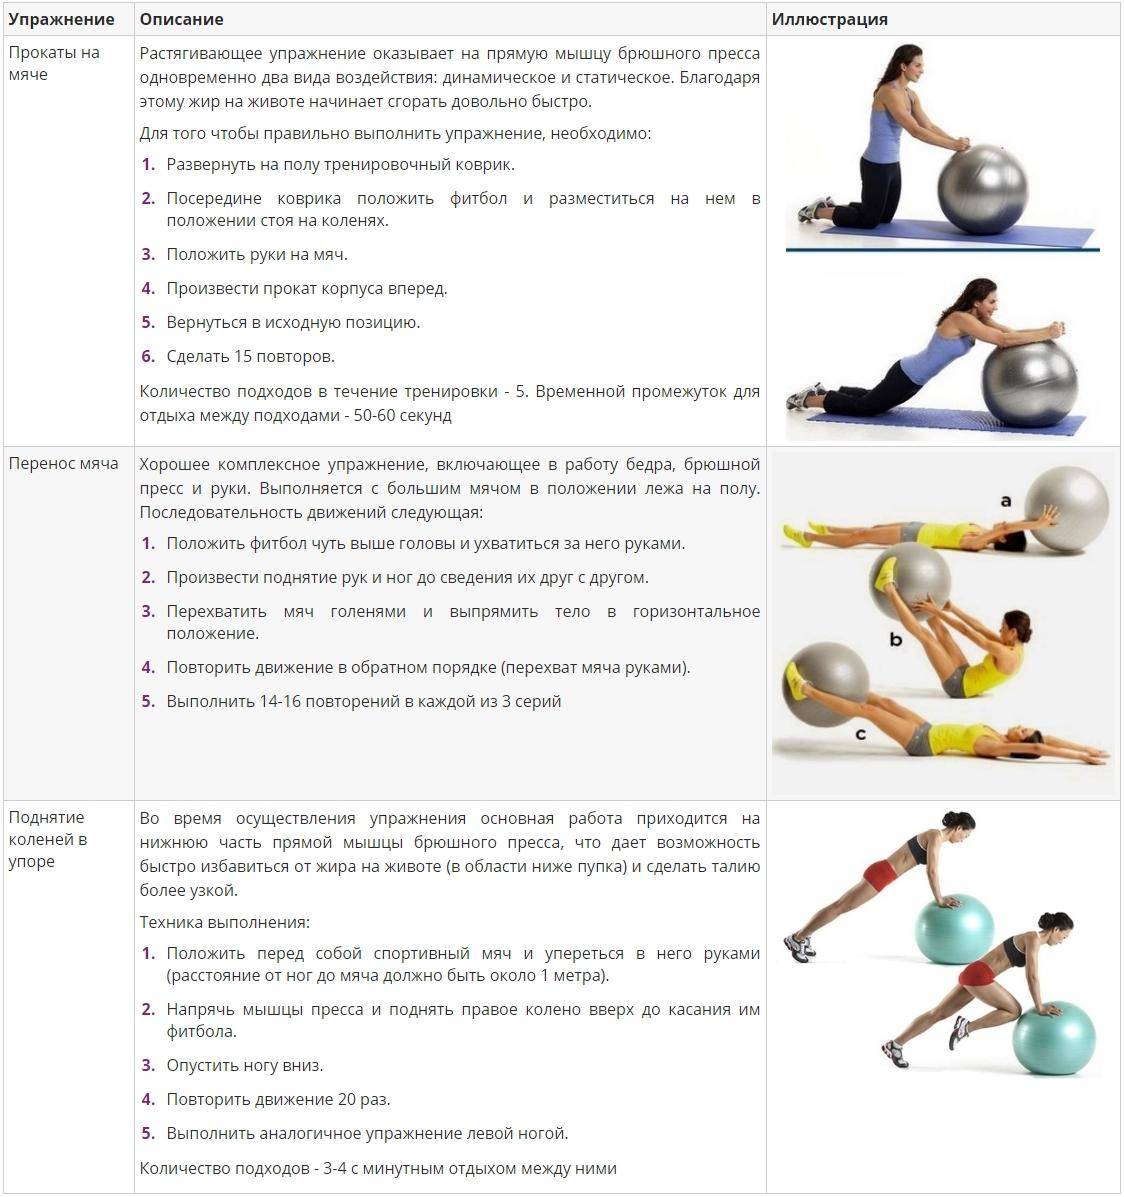 Упражнения на фитболе для похудения: спина, пресс, ягодицы - похудейкина